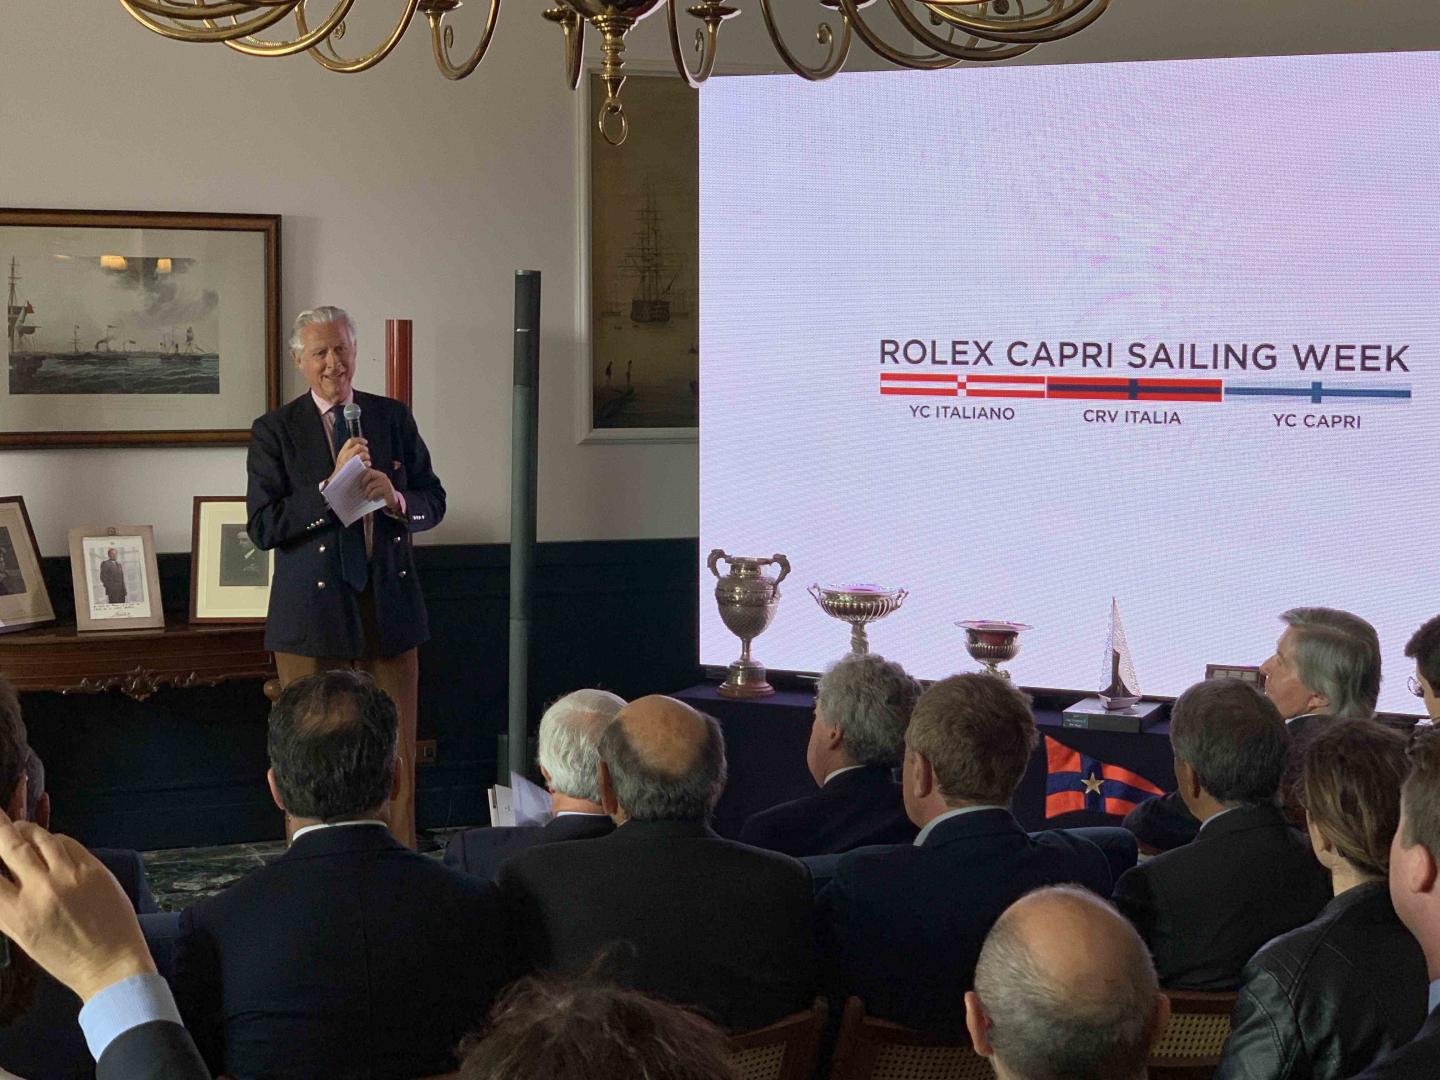 Presentata Rolex Capri Sailing Week, dal 10 al 18 maggio